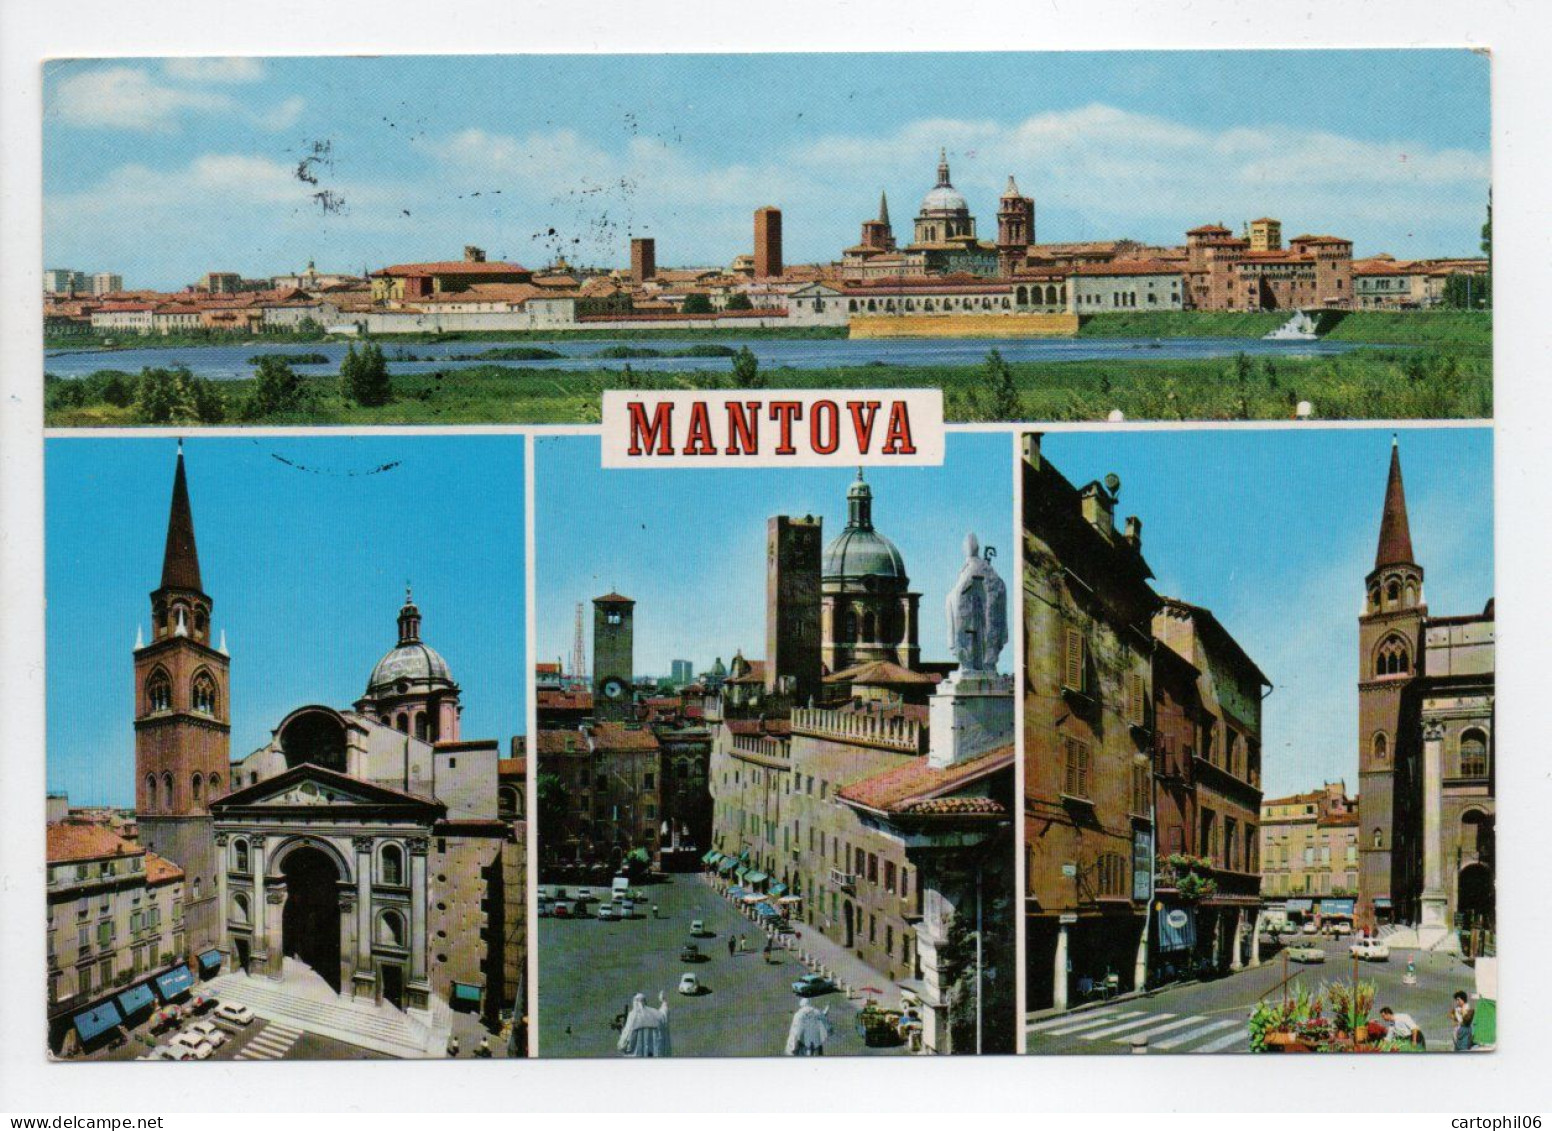 - Carte Postale MANTOVA (Italie) Pour SAINT-VIATRE (France) 19.4.1990 - TAXE A ETUDIER - - Postage Due